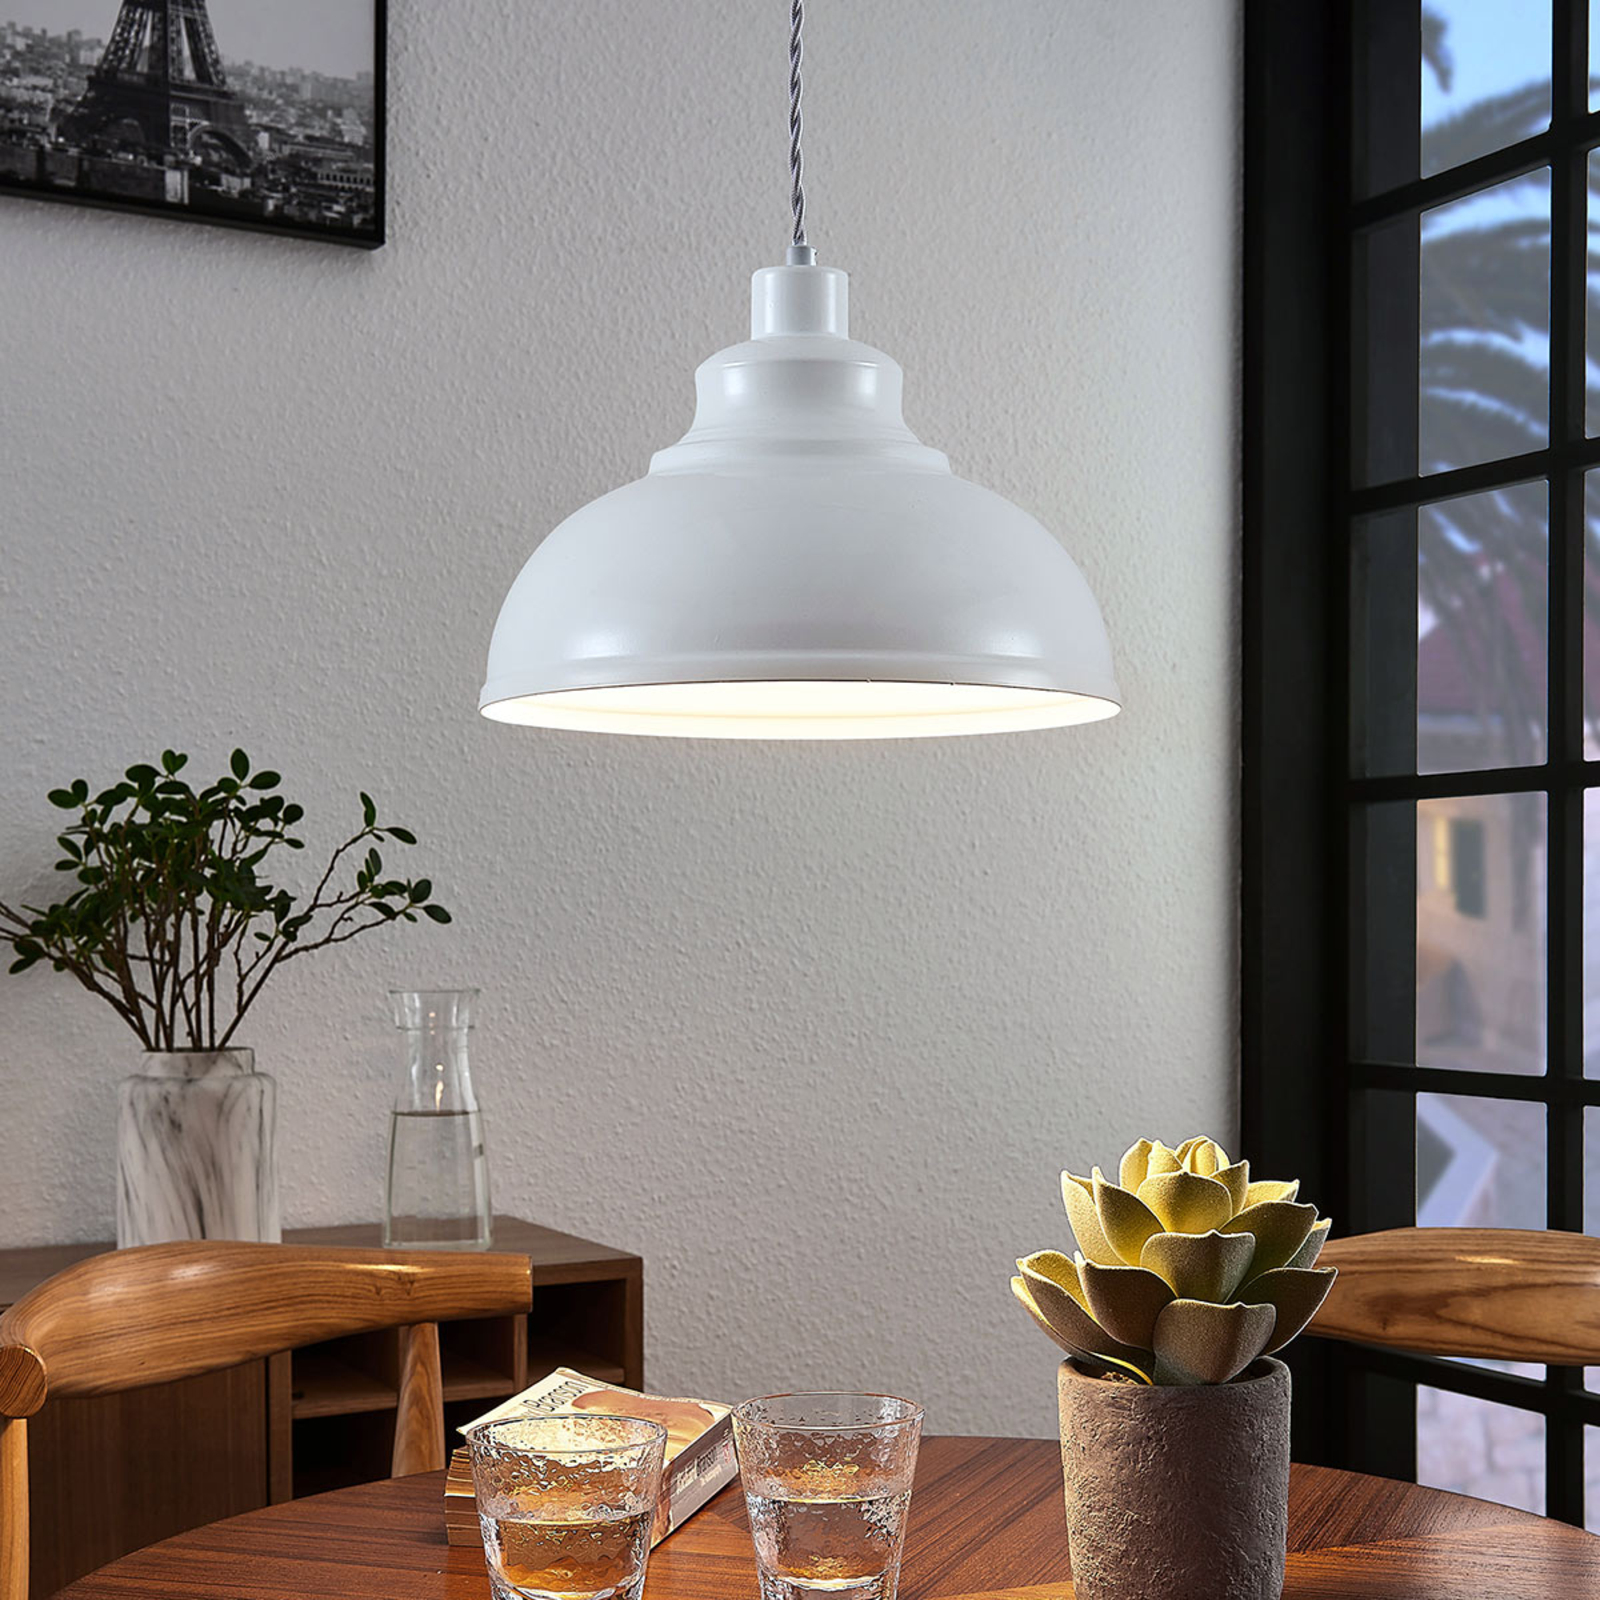 Zegevieren zweer Vrijgevigheid Vintage hanglamp Albertine, metaal, wit | Lampen24.nl